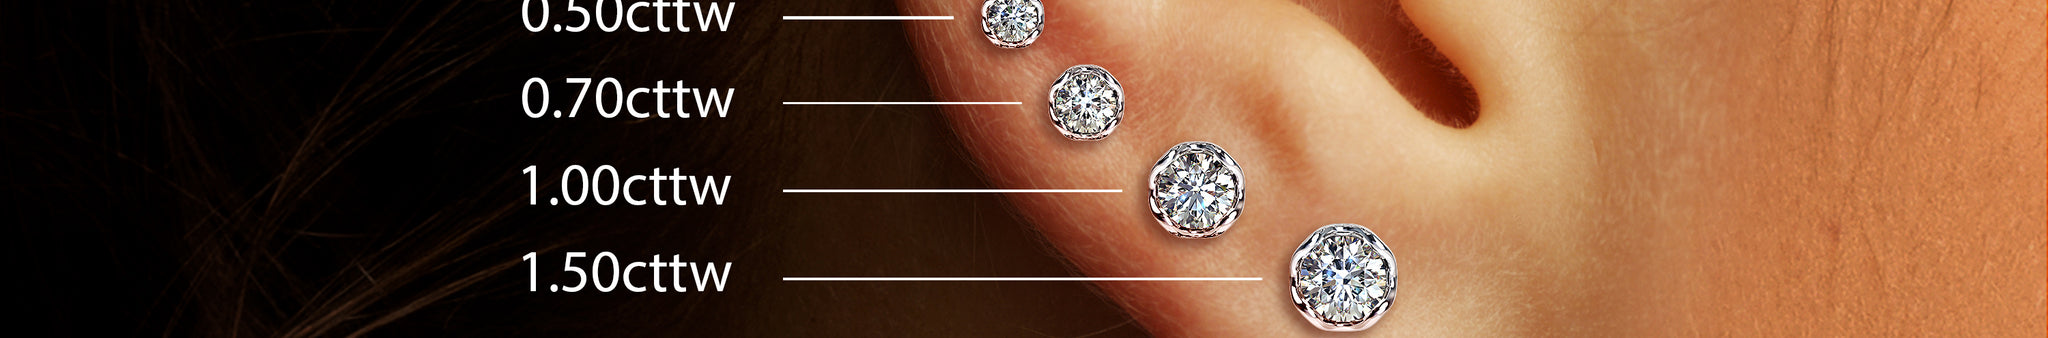 Lotus Petals Diamond Stud Earrings